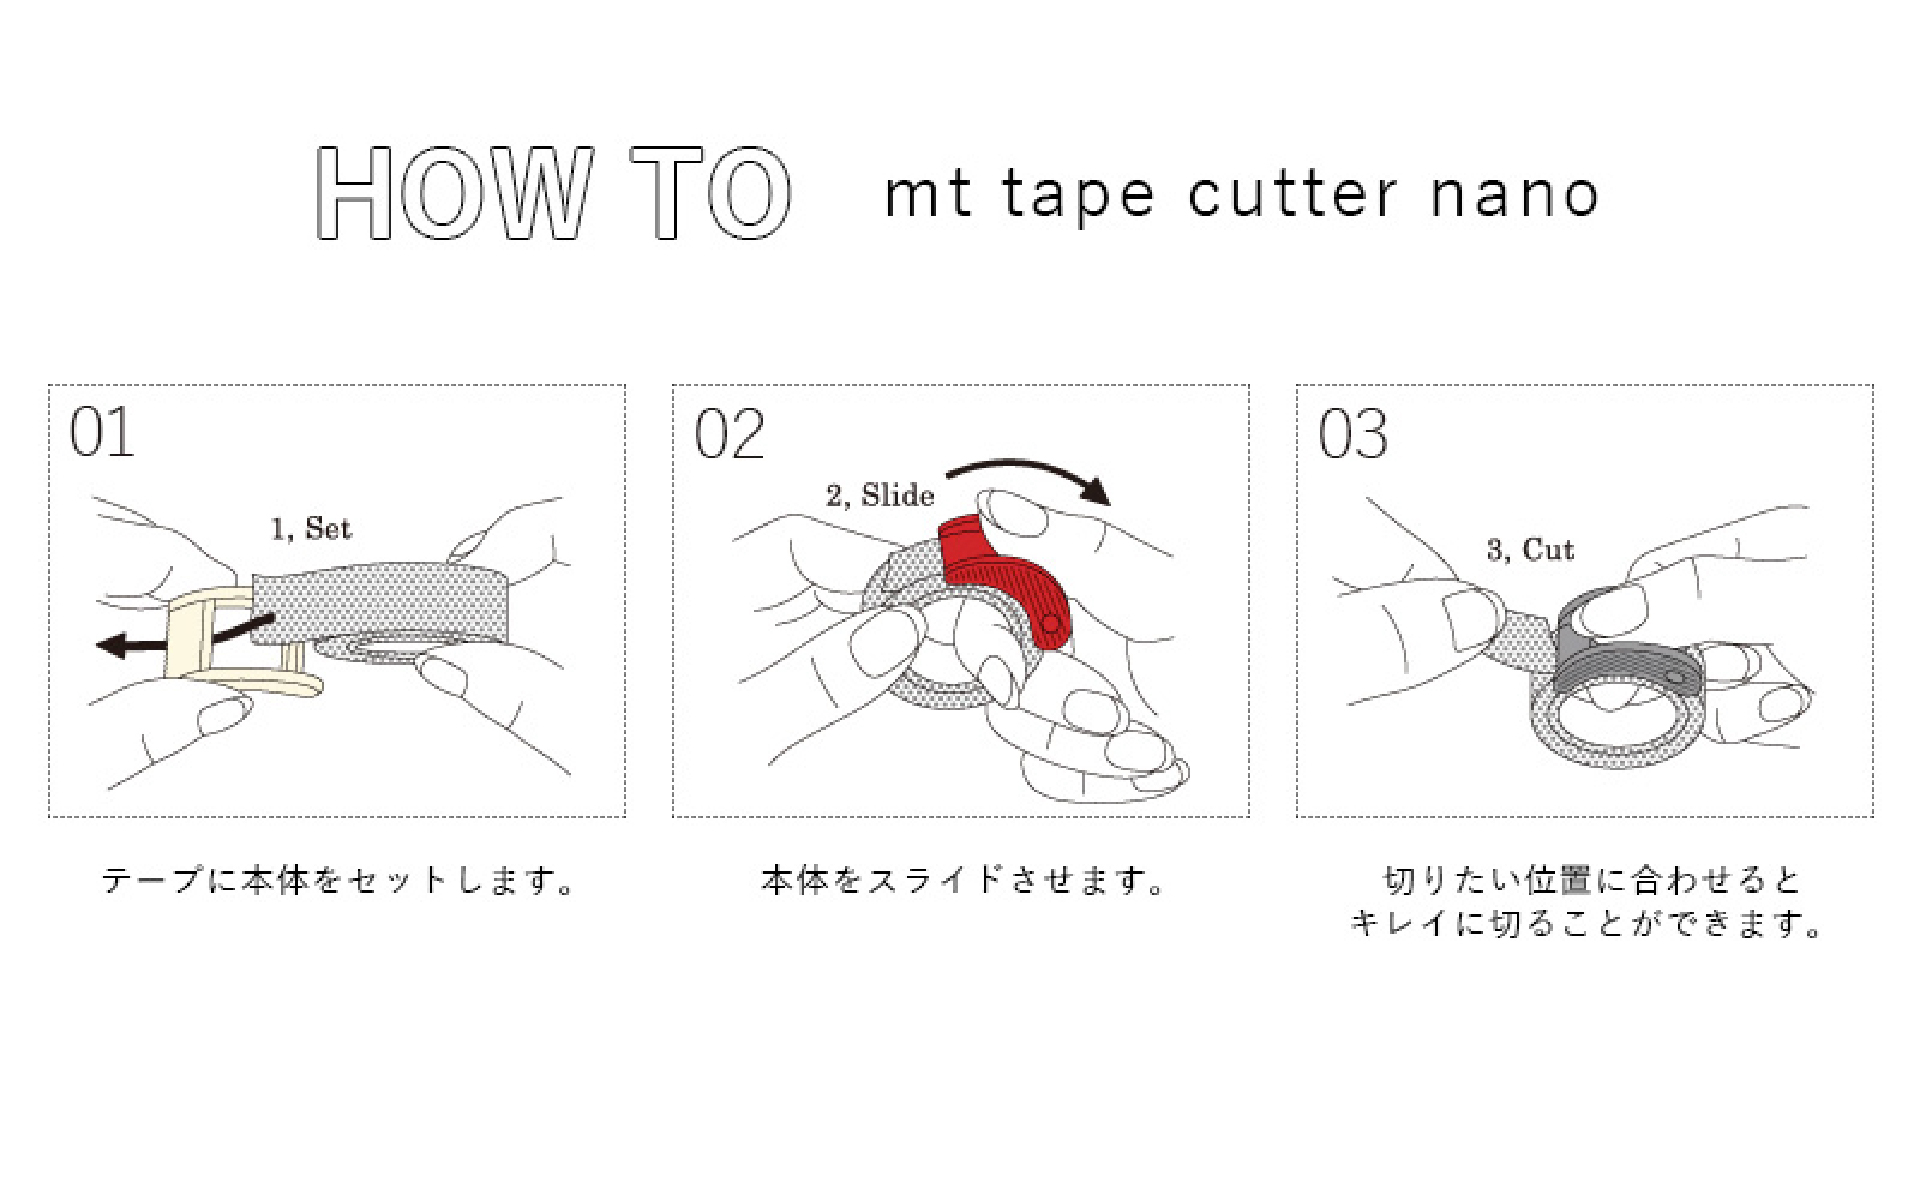 △mt tape cutter nano35〜40用×1set | mt tape cutter mt tape cutter